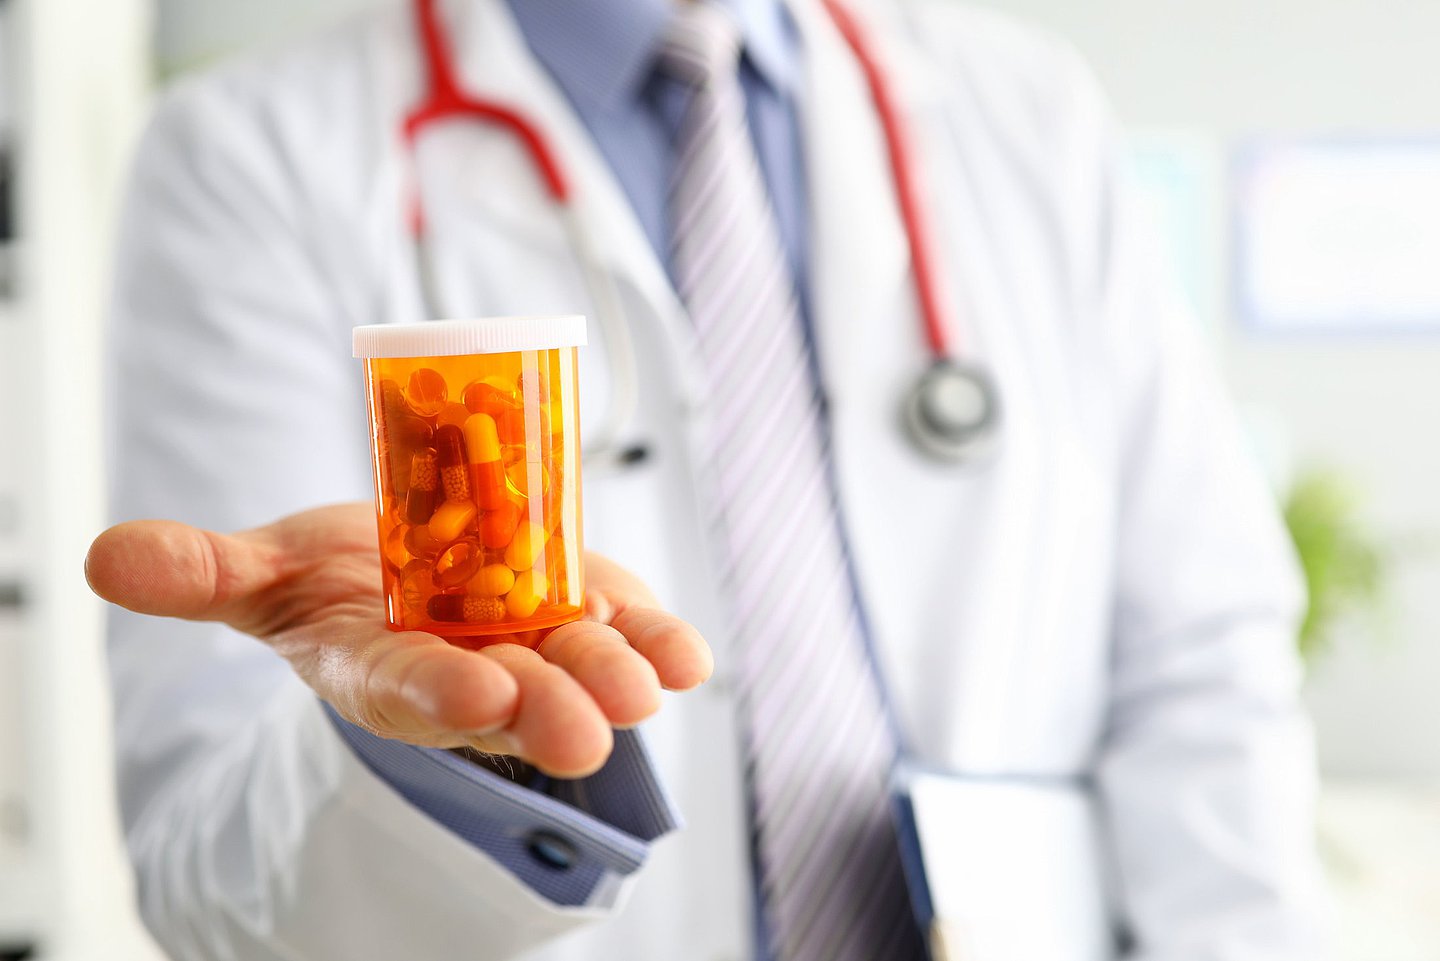 Foto zeigt einen Arzt oder eine Ärztin, die in der ausgestreckten Hand ein Behältnis mit Tabletten zeigt.